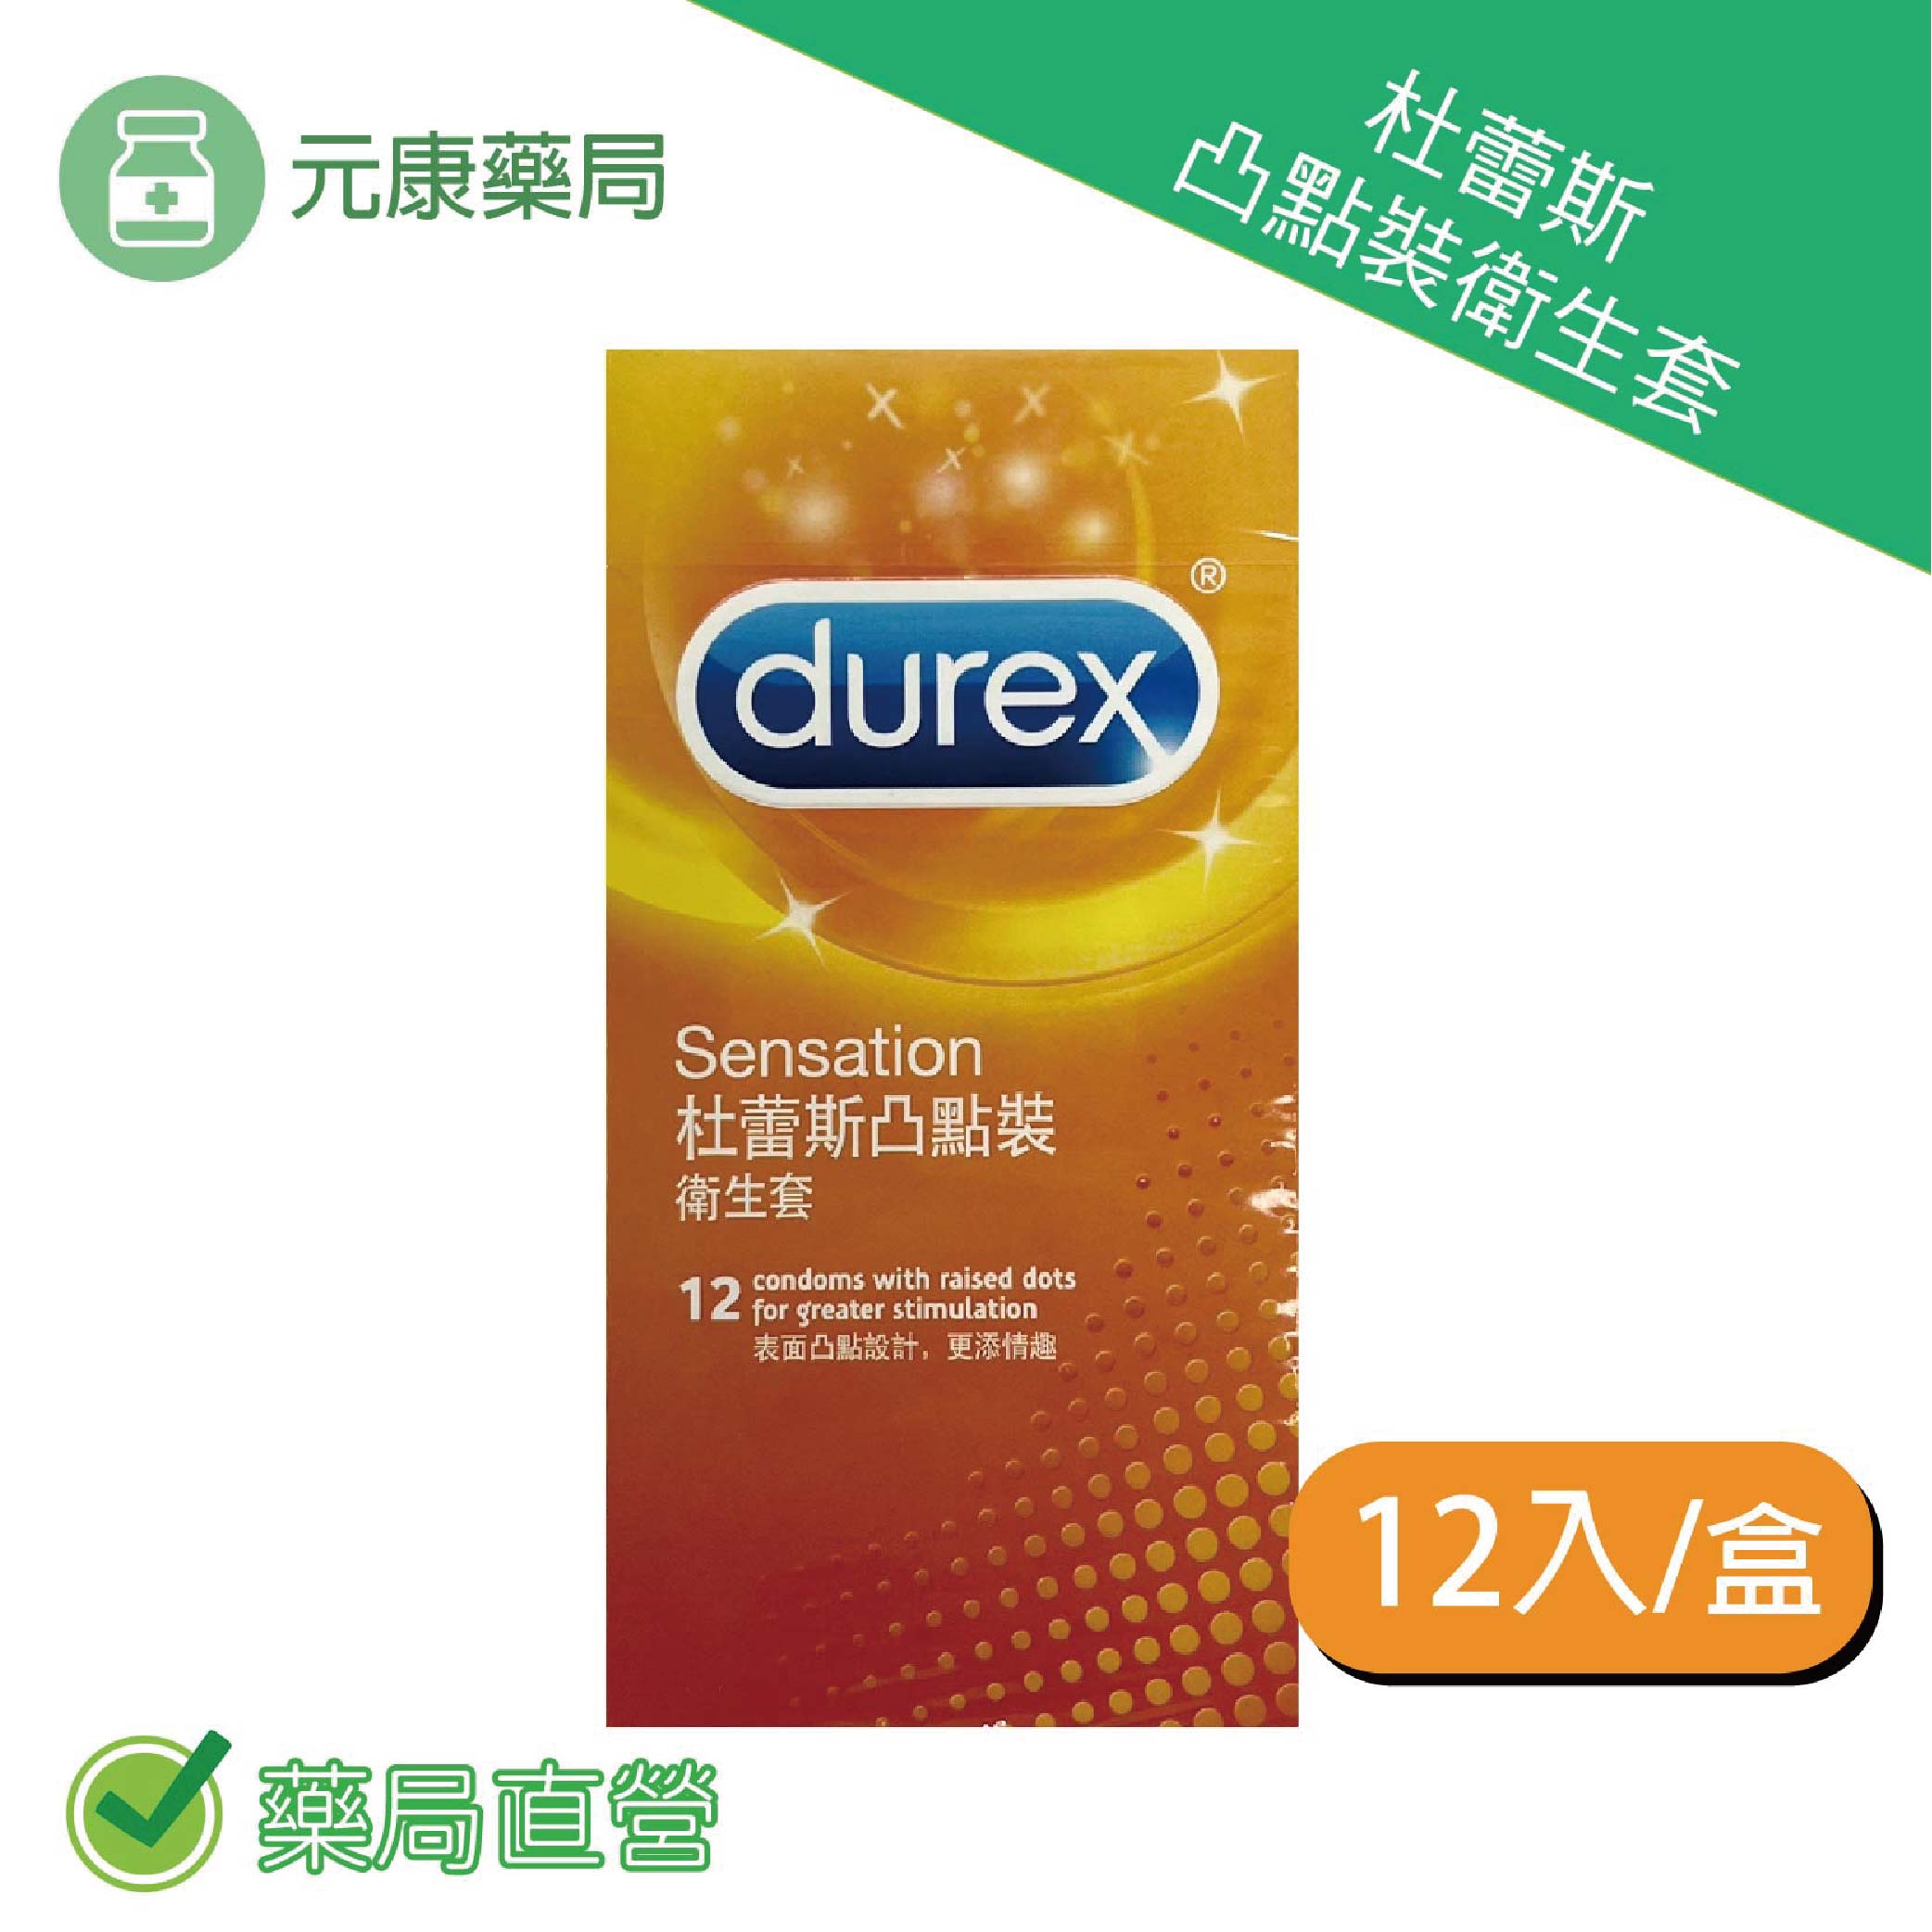 Durex杜蕾斯-凸點型保險套/ 衛生套 (12入裝)